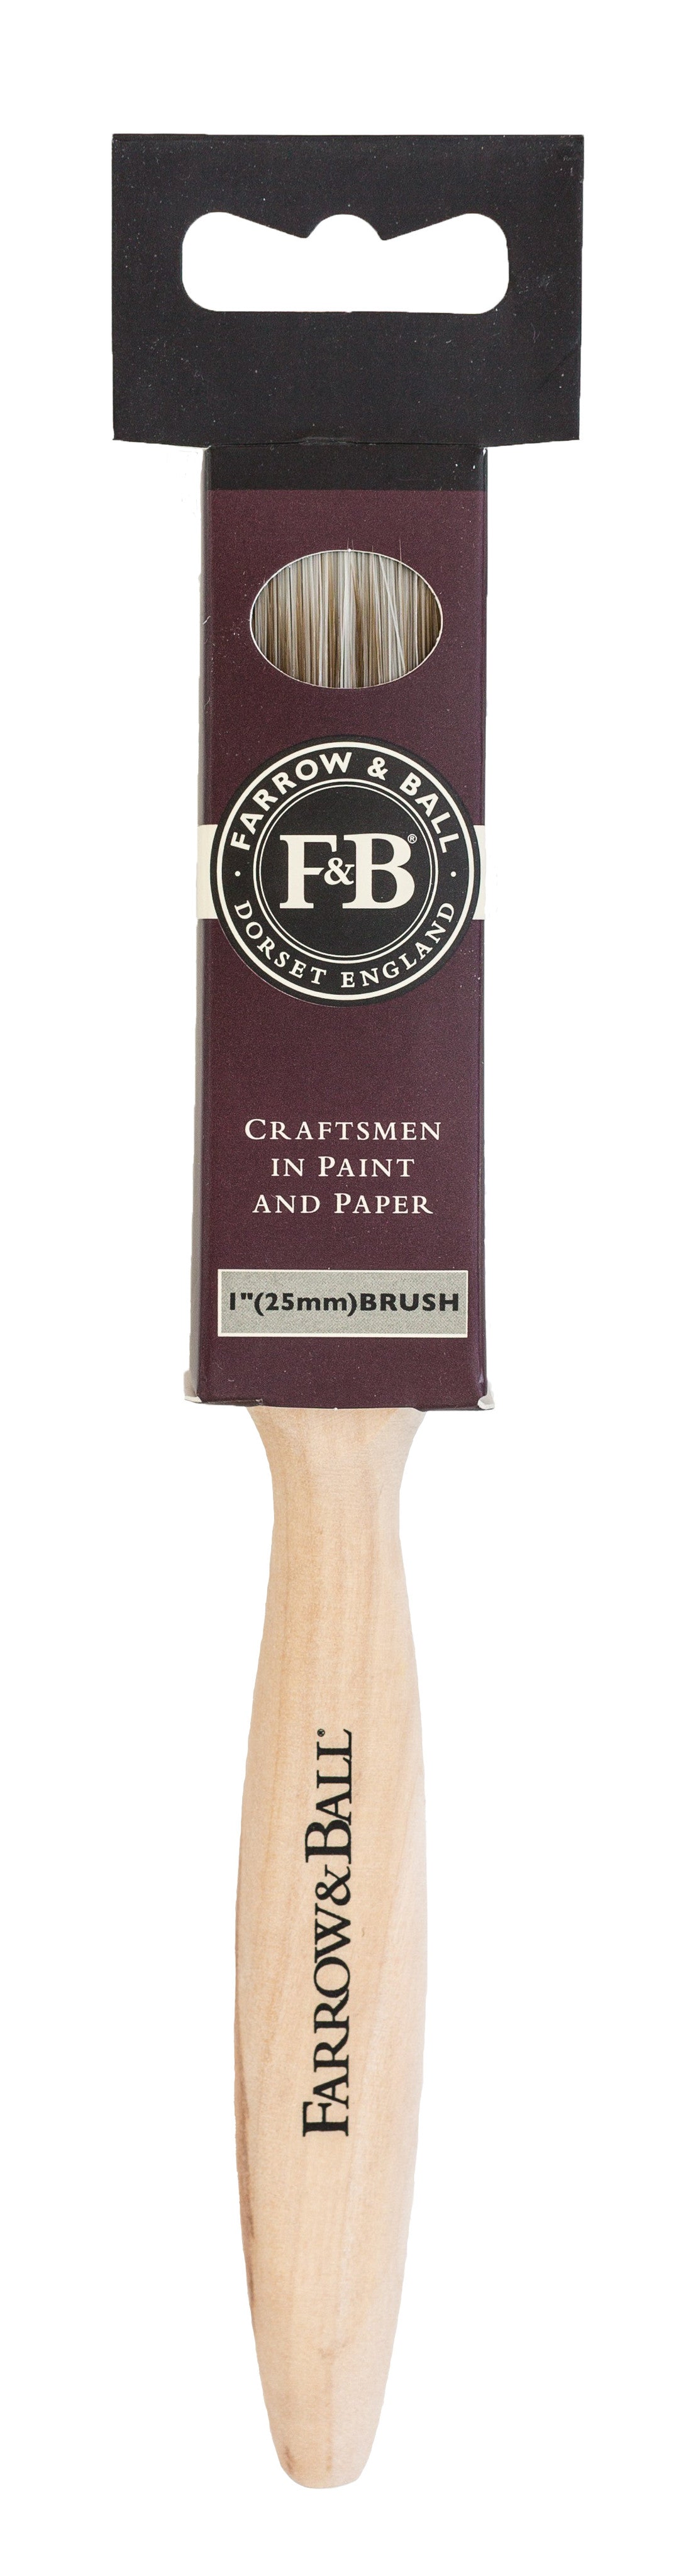 1 inch paint brush-2